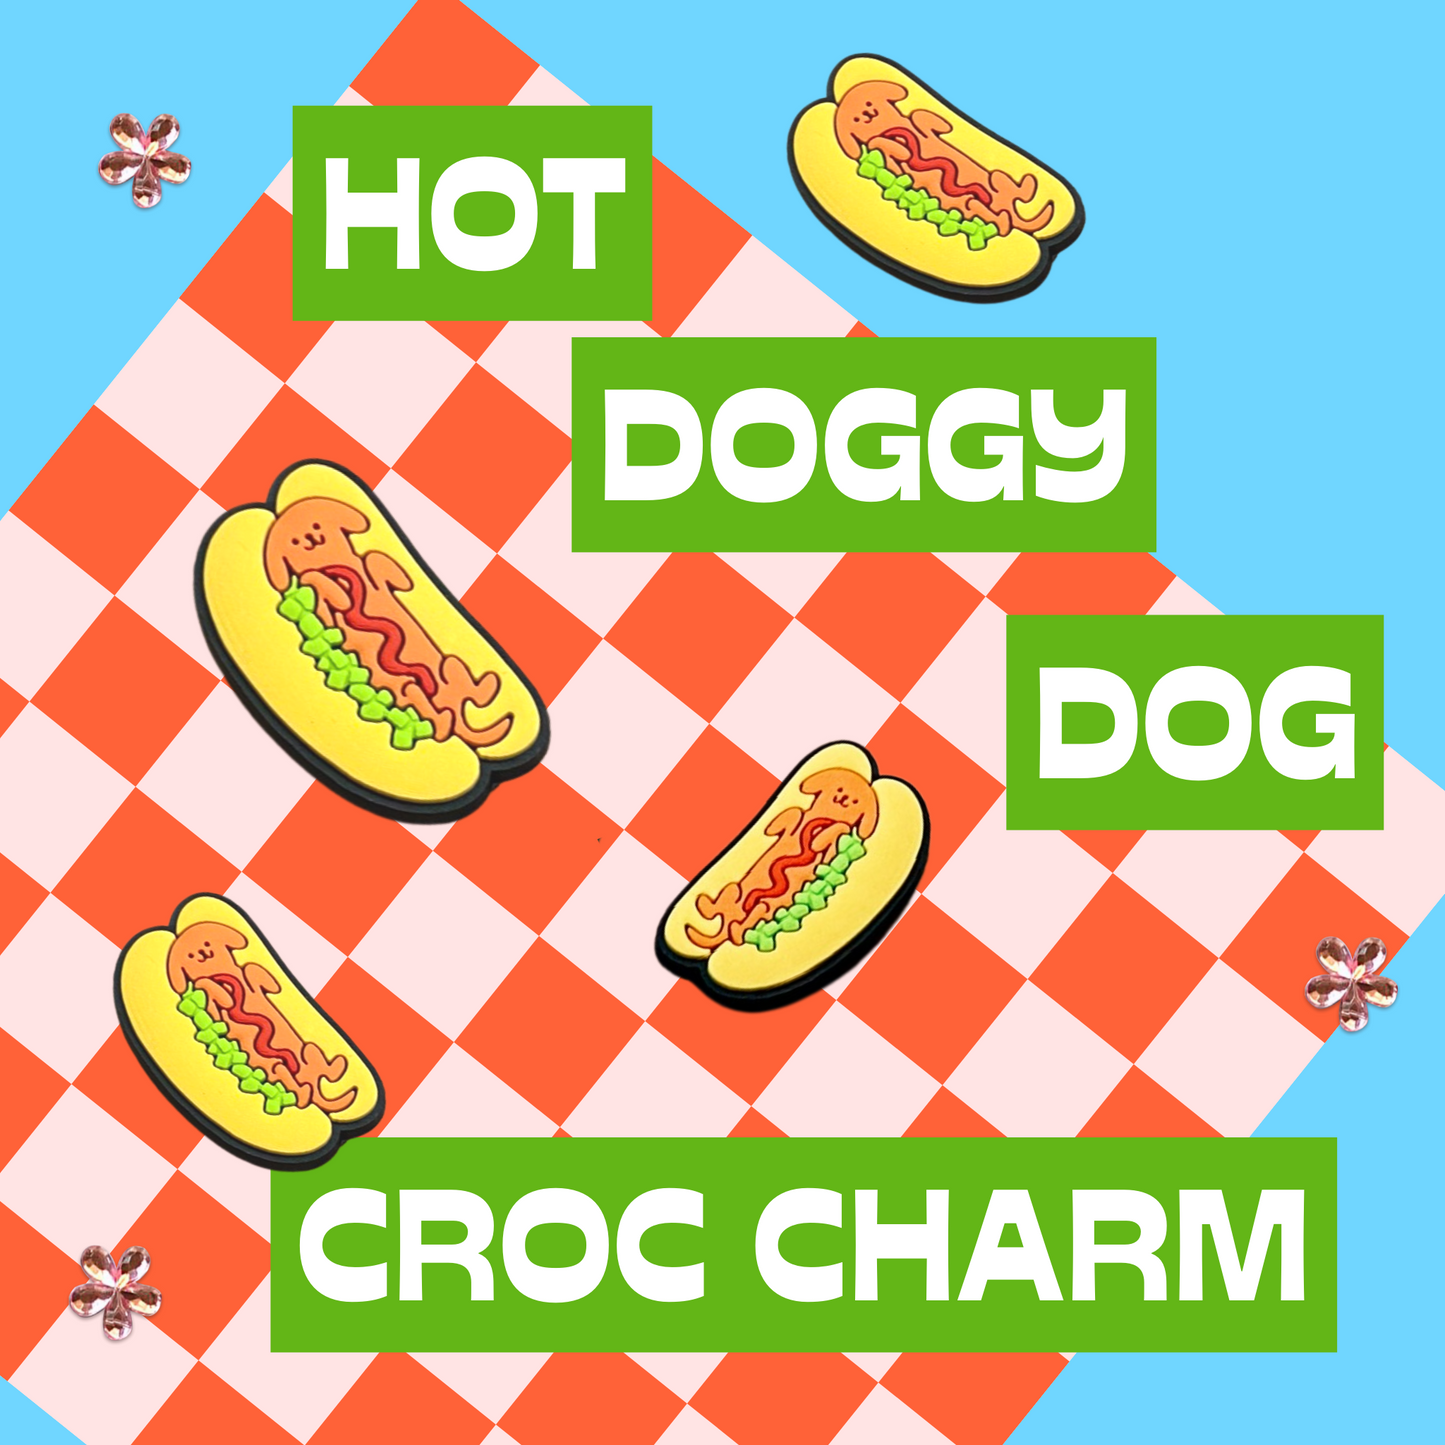 Hot Doggy Dog Shoe Charm